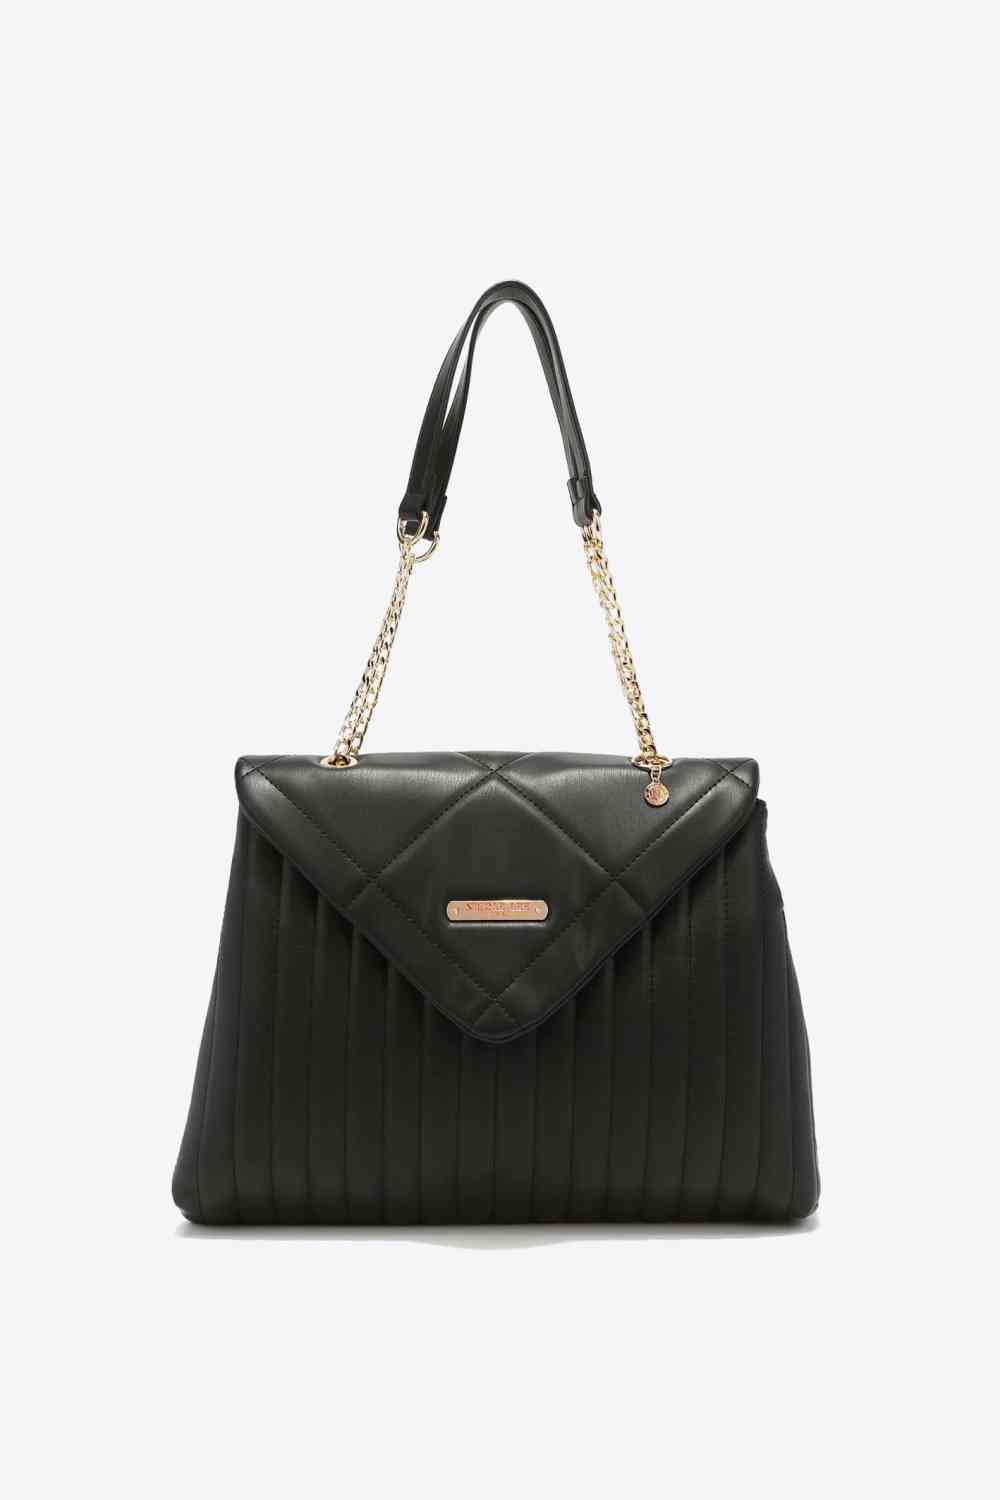 Nicole Lee USA A Nice Touch Handbag Black One Size